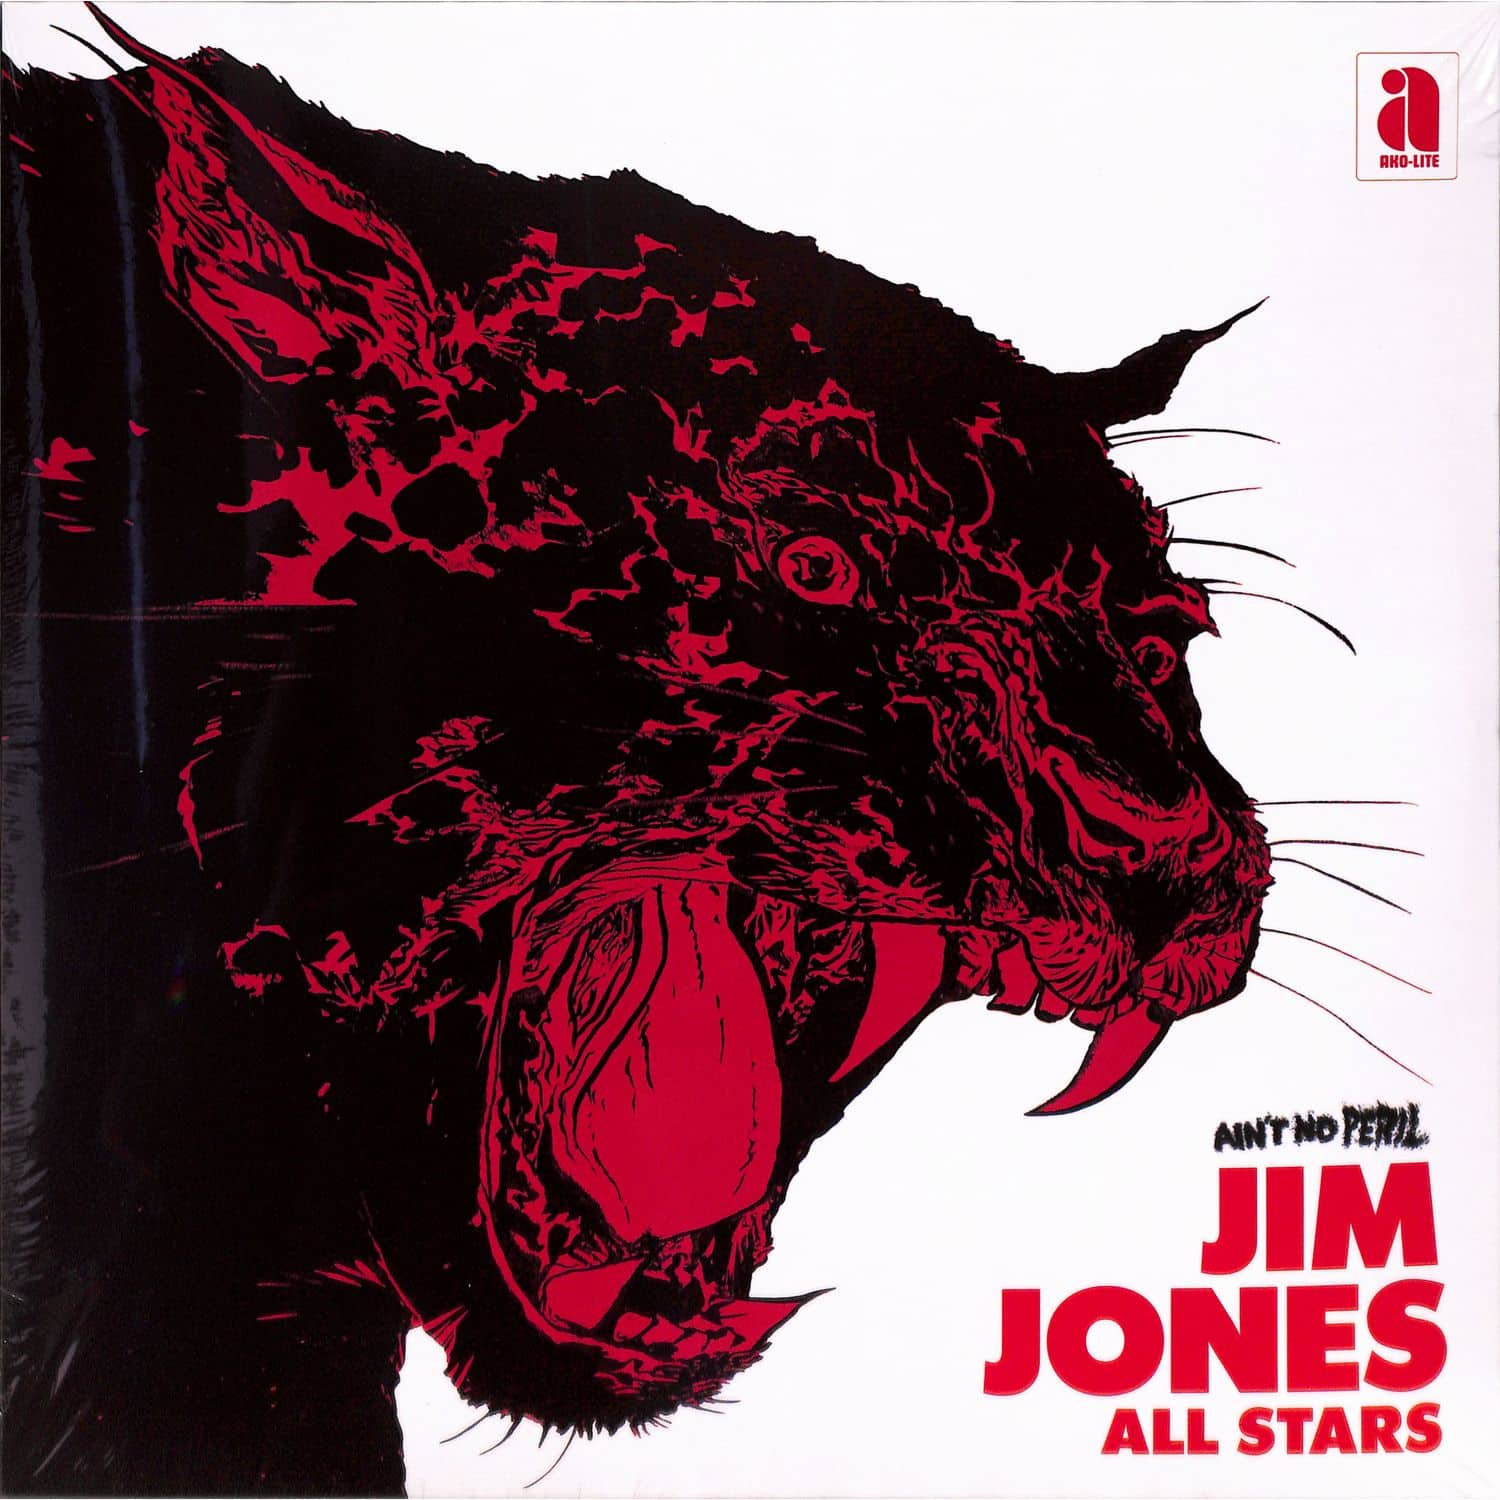 Jim Jones All Stars - AINT NO PERIL 